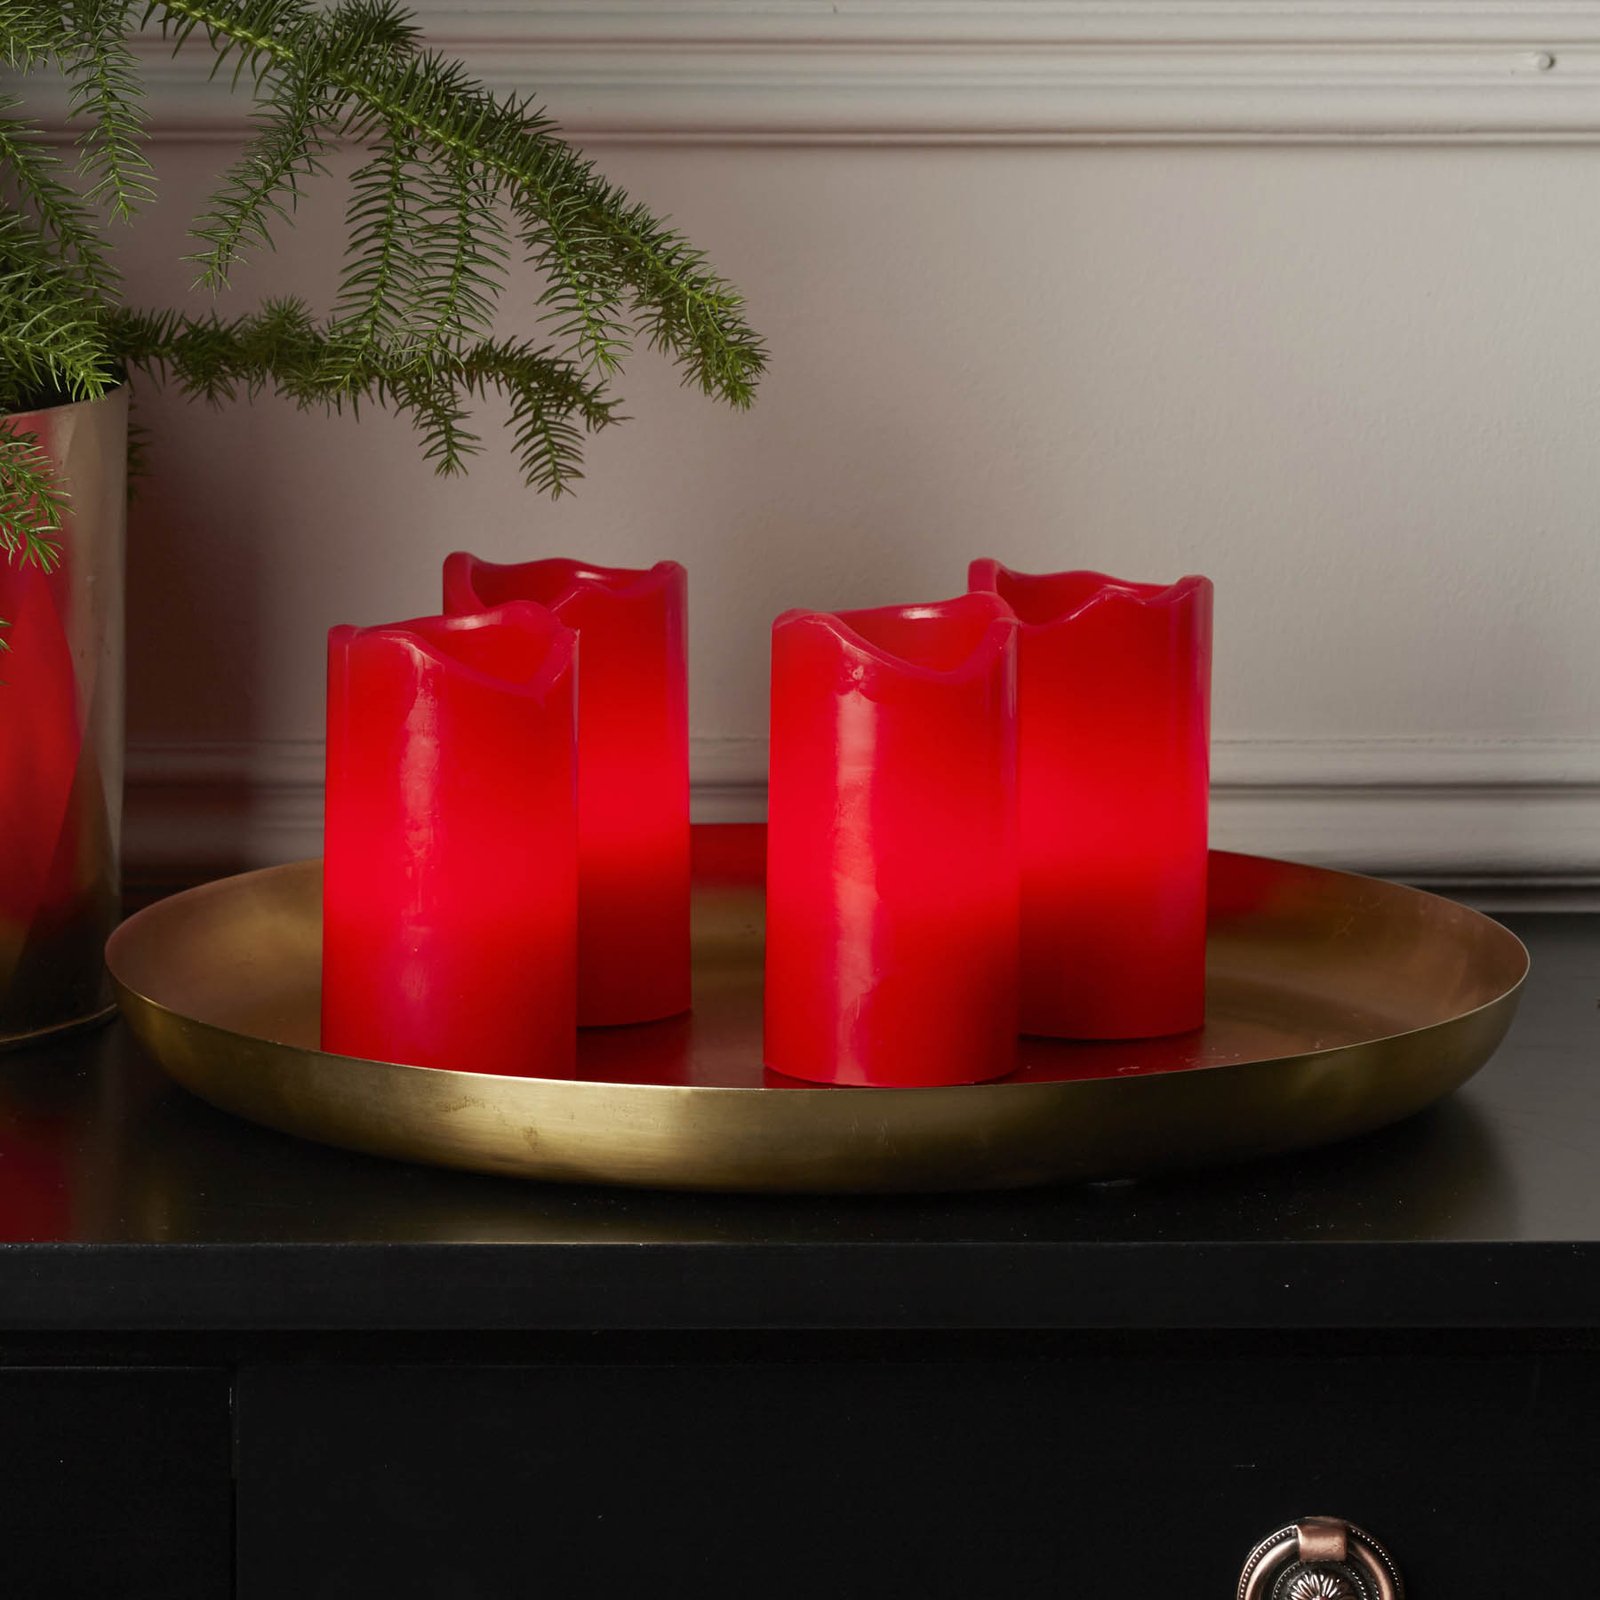 4 db - Candle LED gyertya távirányítóval piros